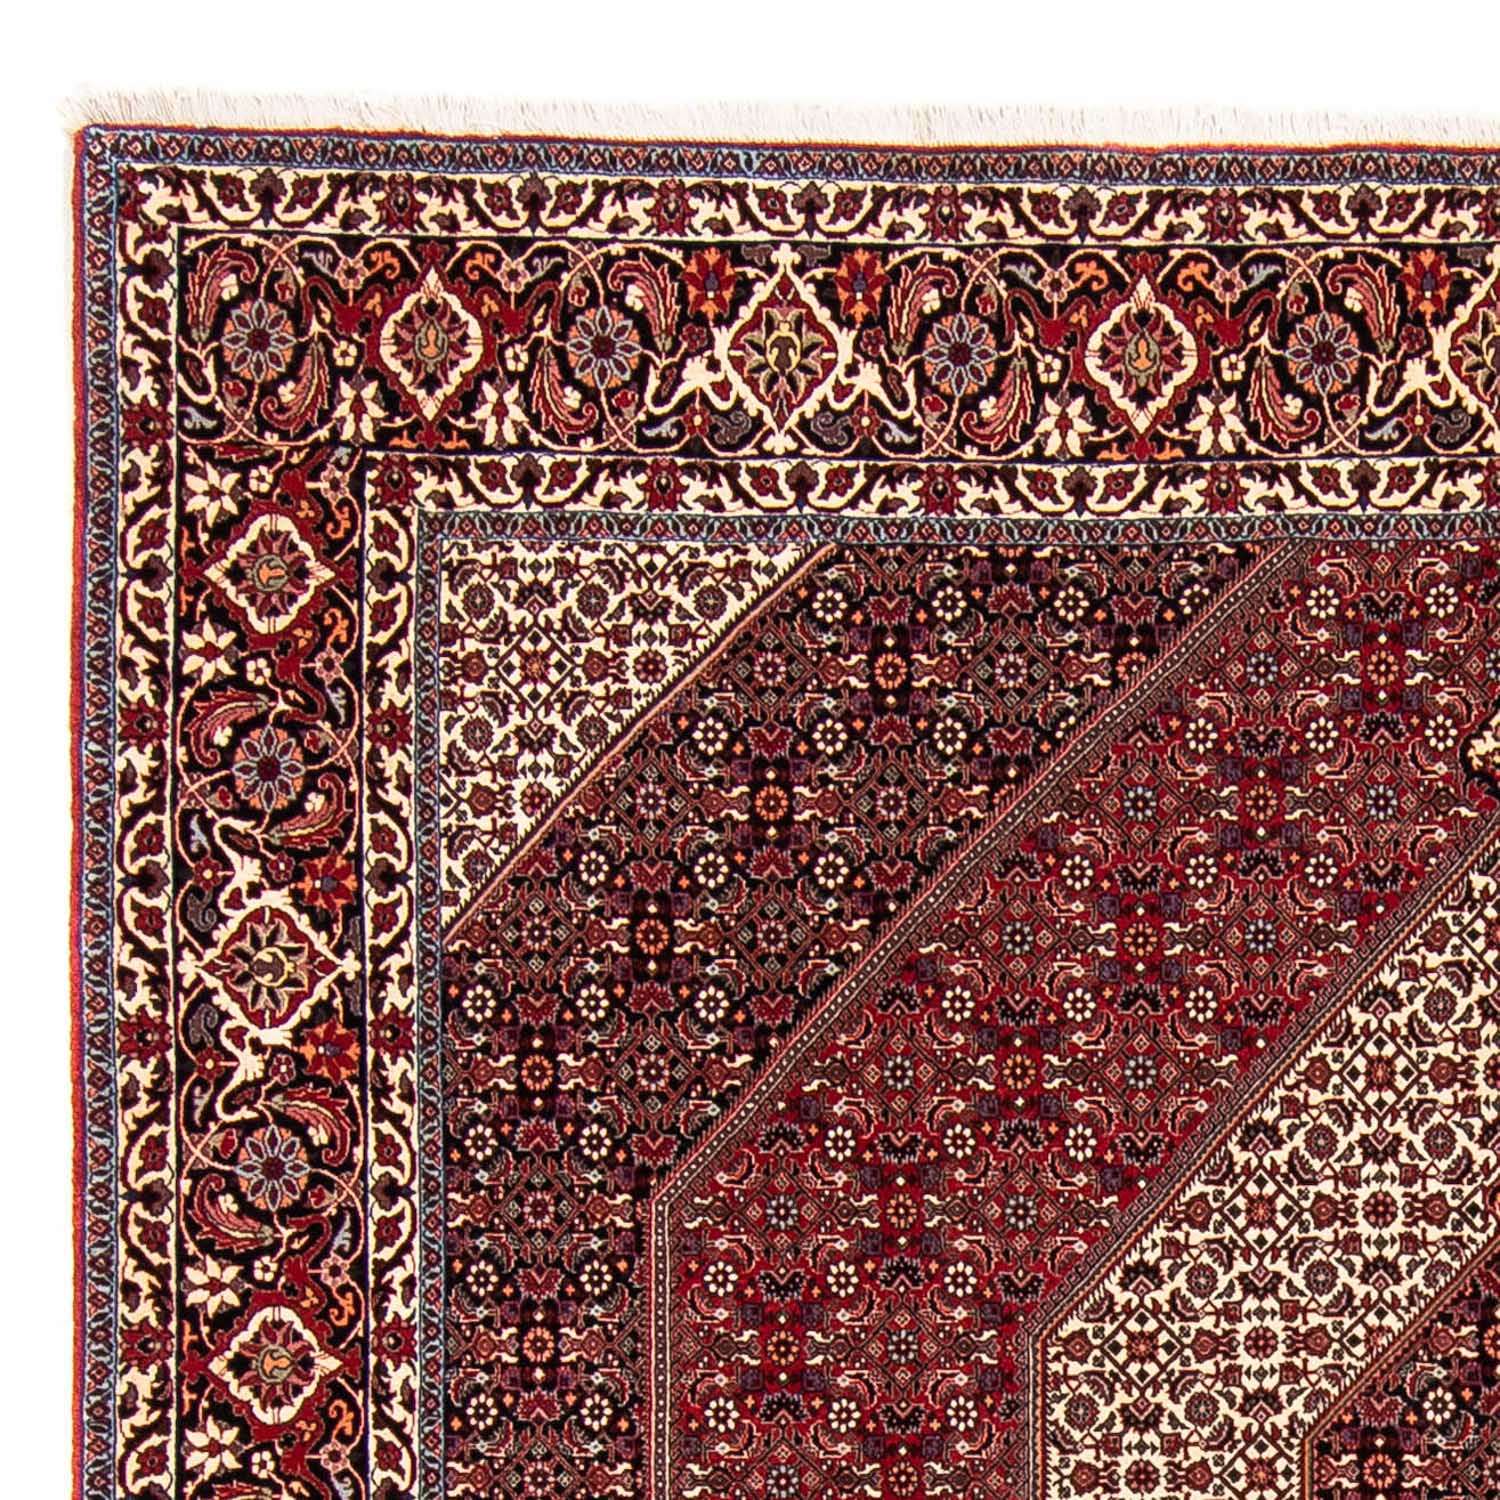 Persisk teppe - Bijar square  - 250 x 250 cm - mørk rød